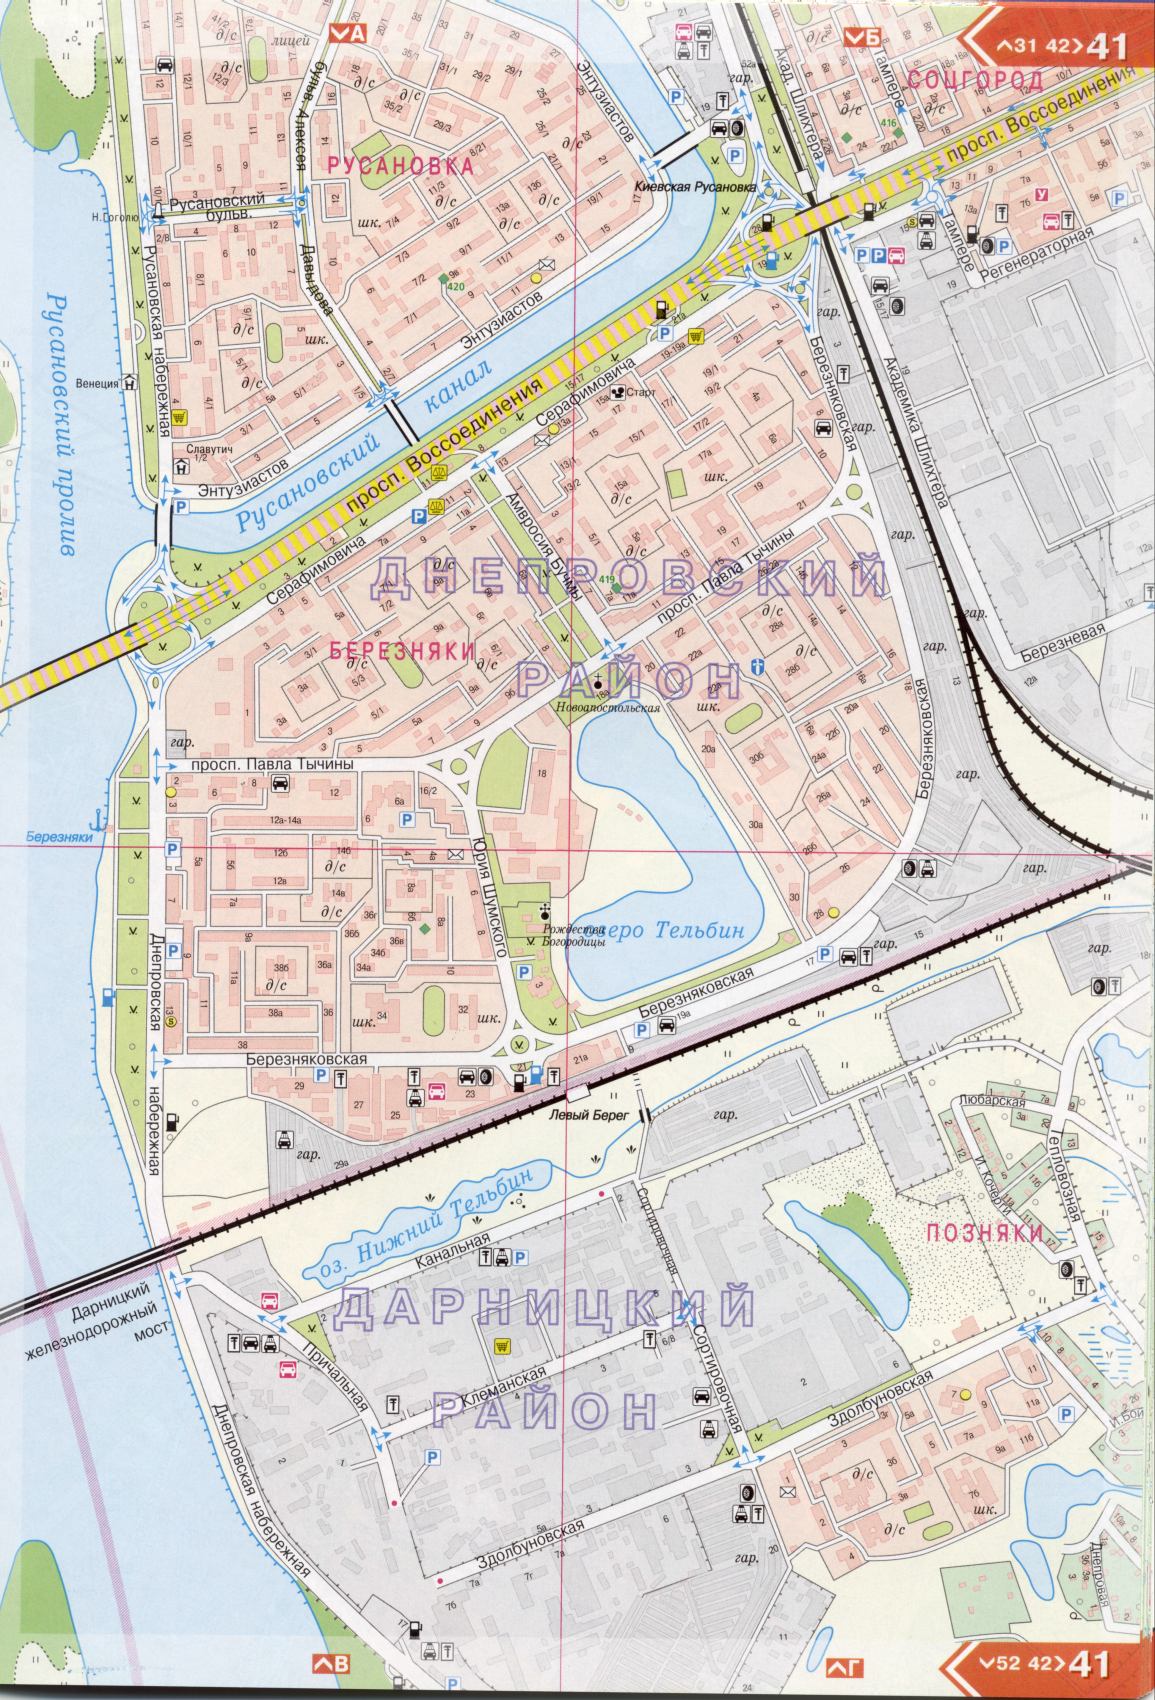 Kiev carte détails 1cm = 150m pour 45 feuilles. Carte de Kiev de l'atlas des routes. Télécharger une carte détaillée, H3